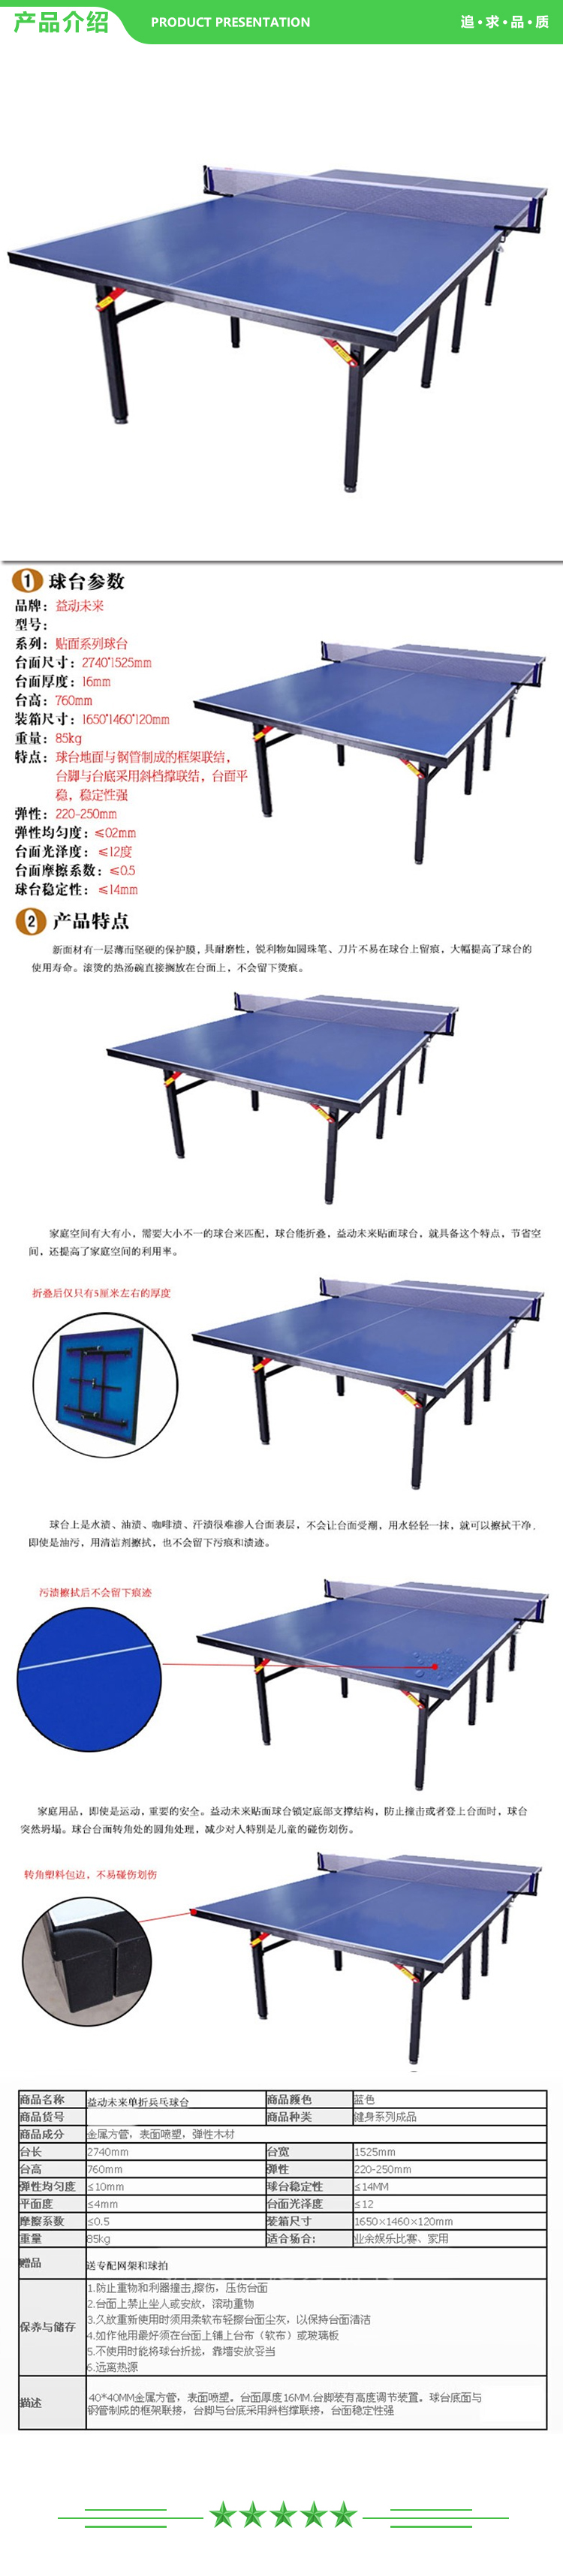 益动未来 练习款 乒乓球台 加厚 标准 室内乒乓球桌 移动折叠乒乓球台 2.jpg